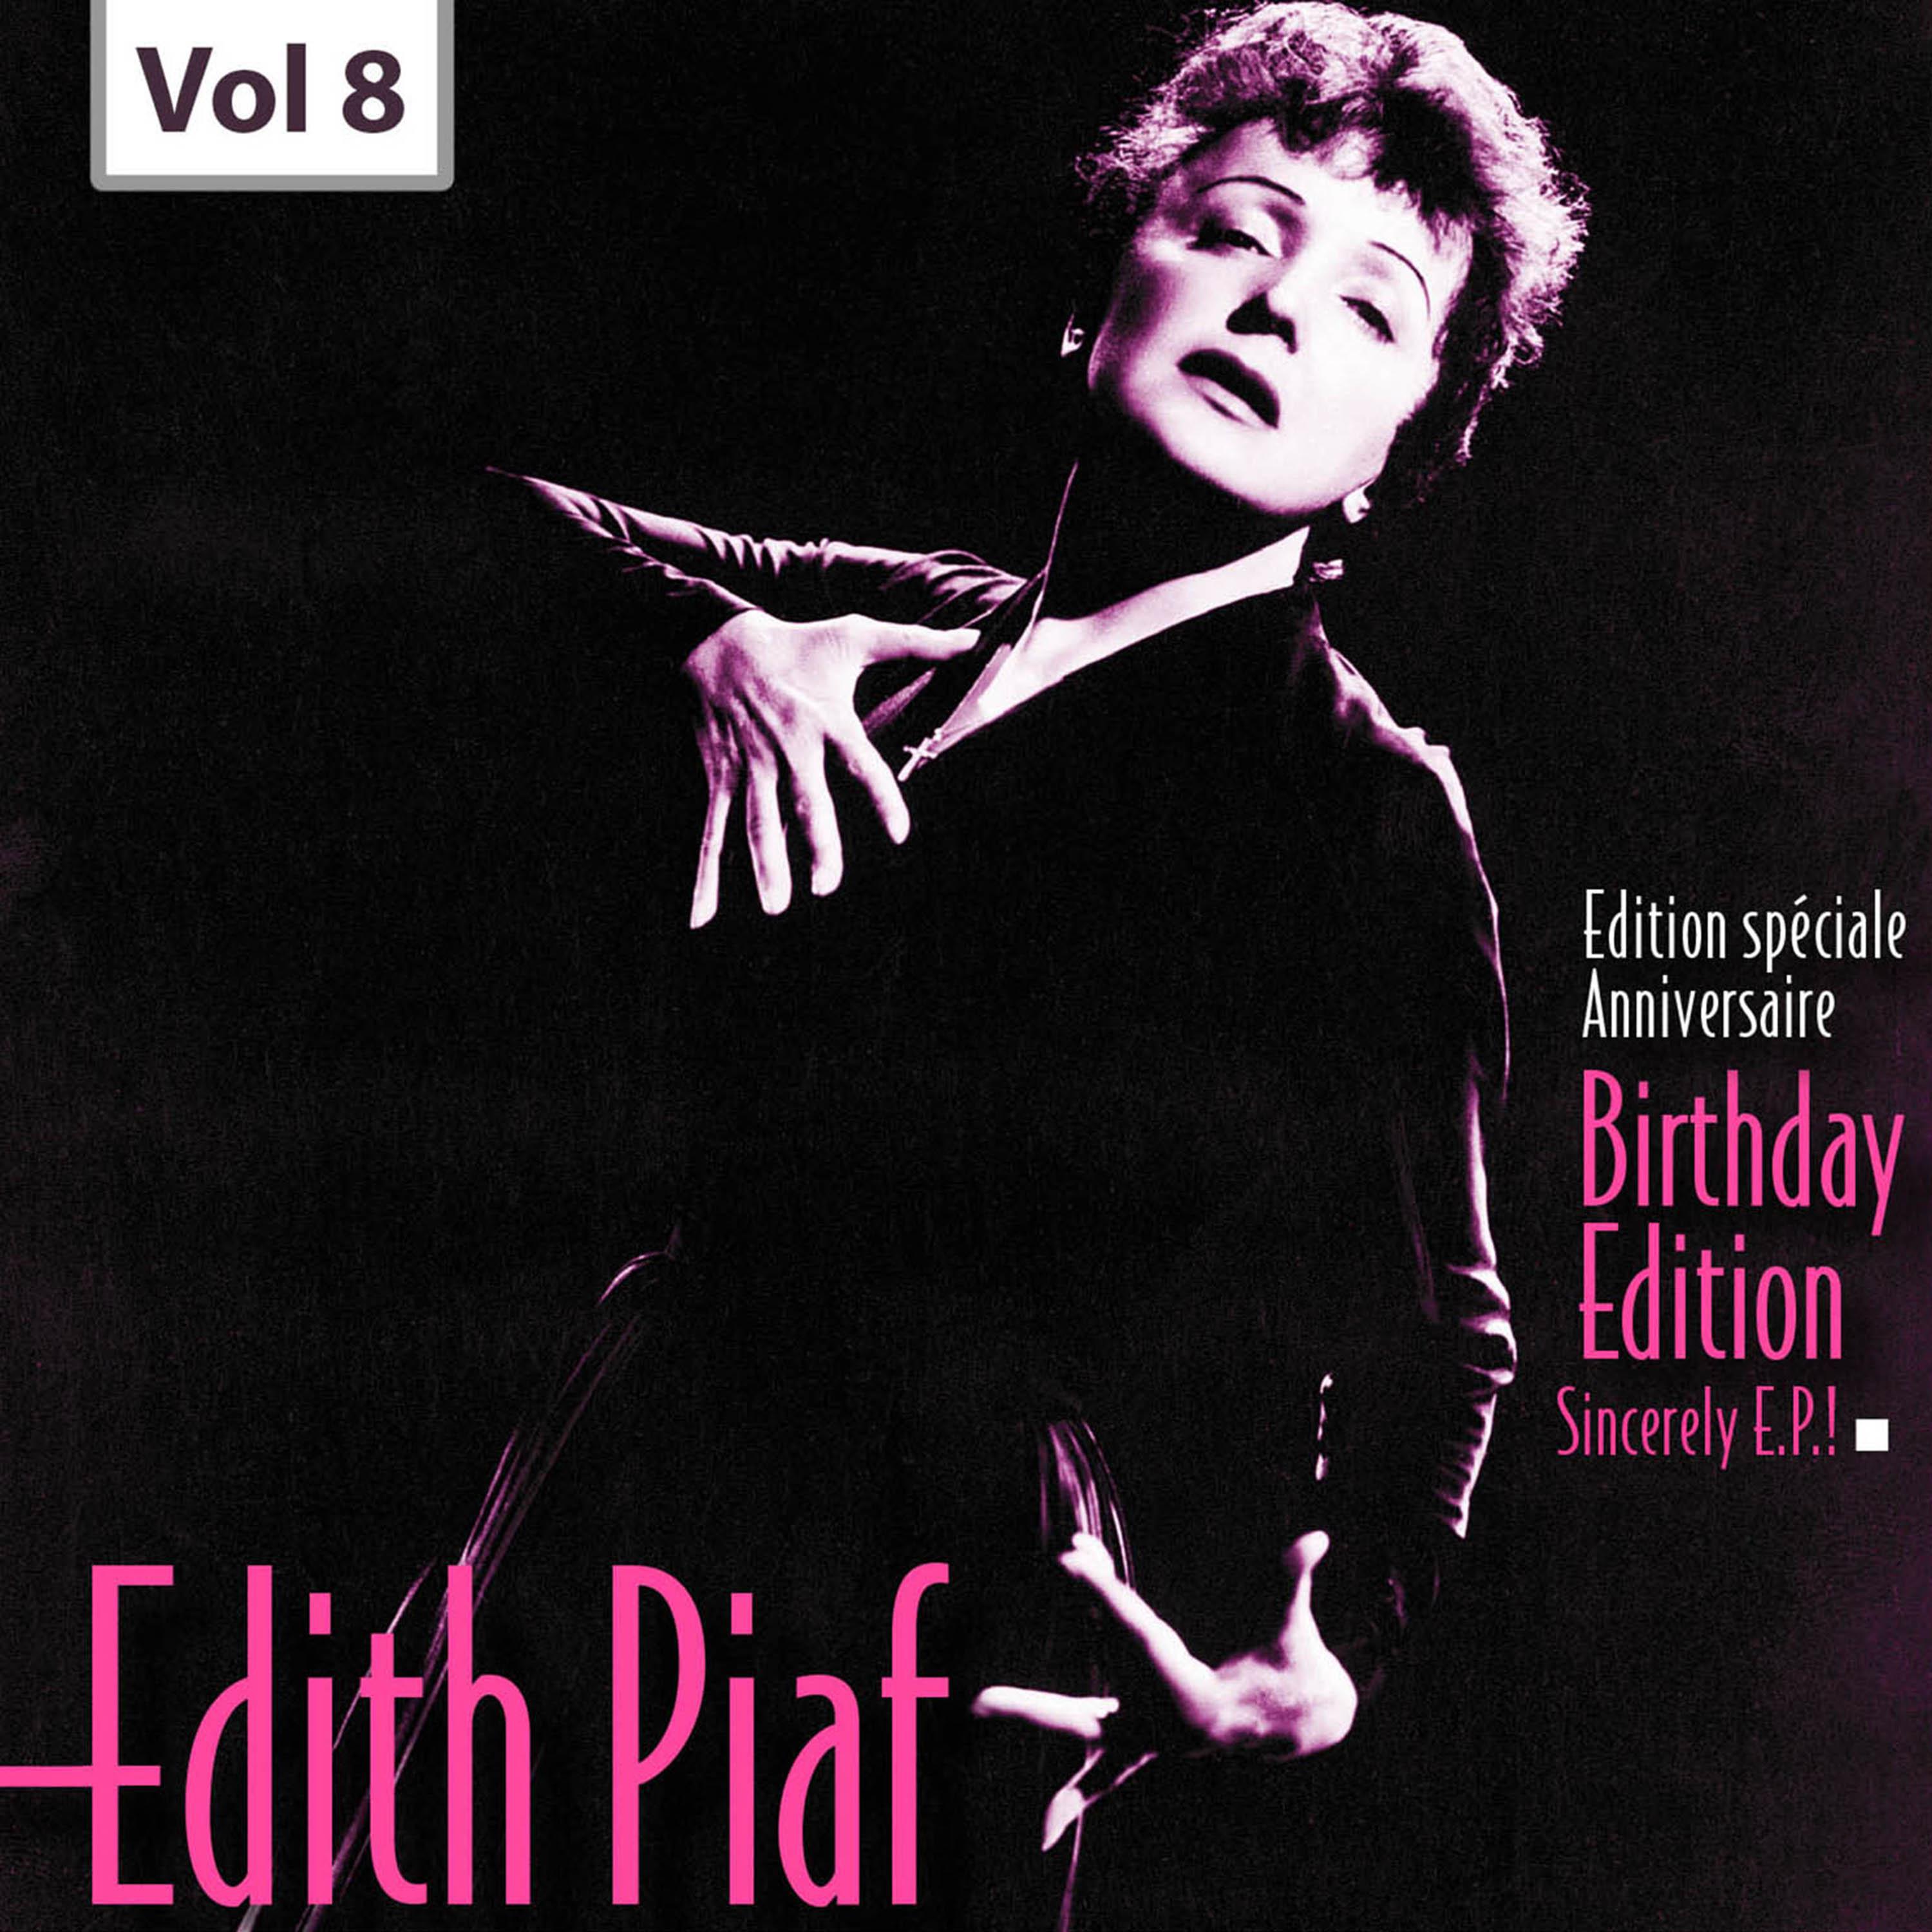 Edition Speciale Anniversaire. Birhday Edition - Edith Piaf, Vol.8